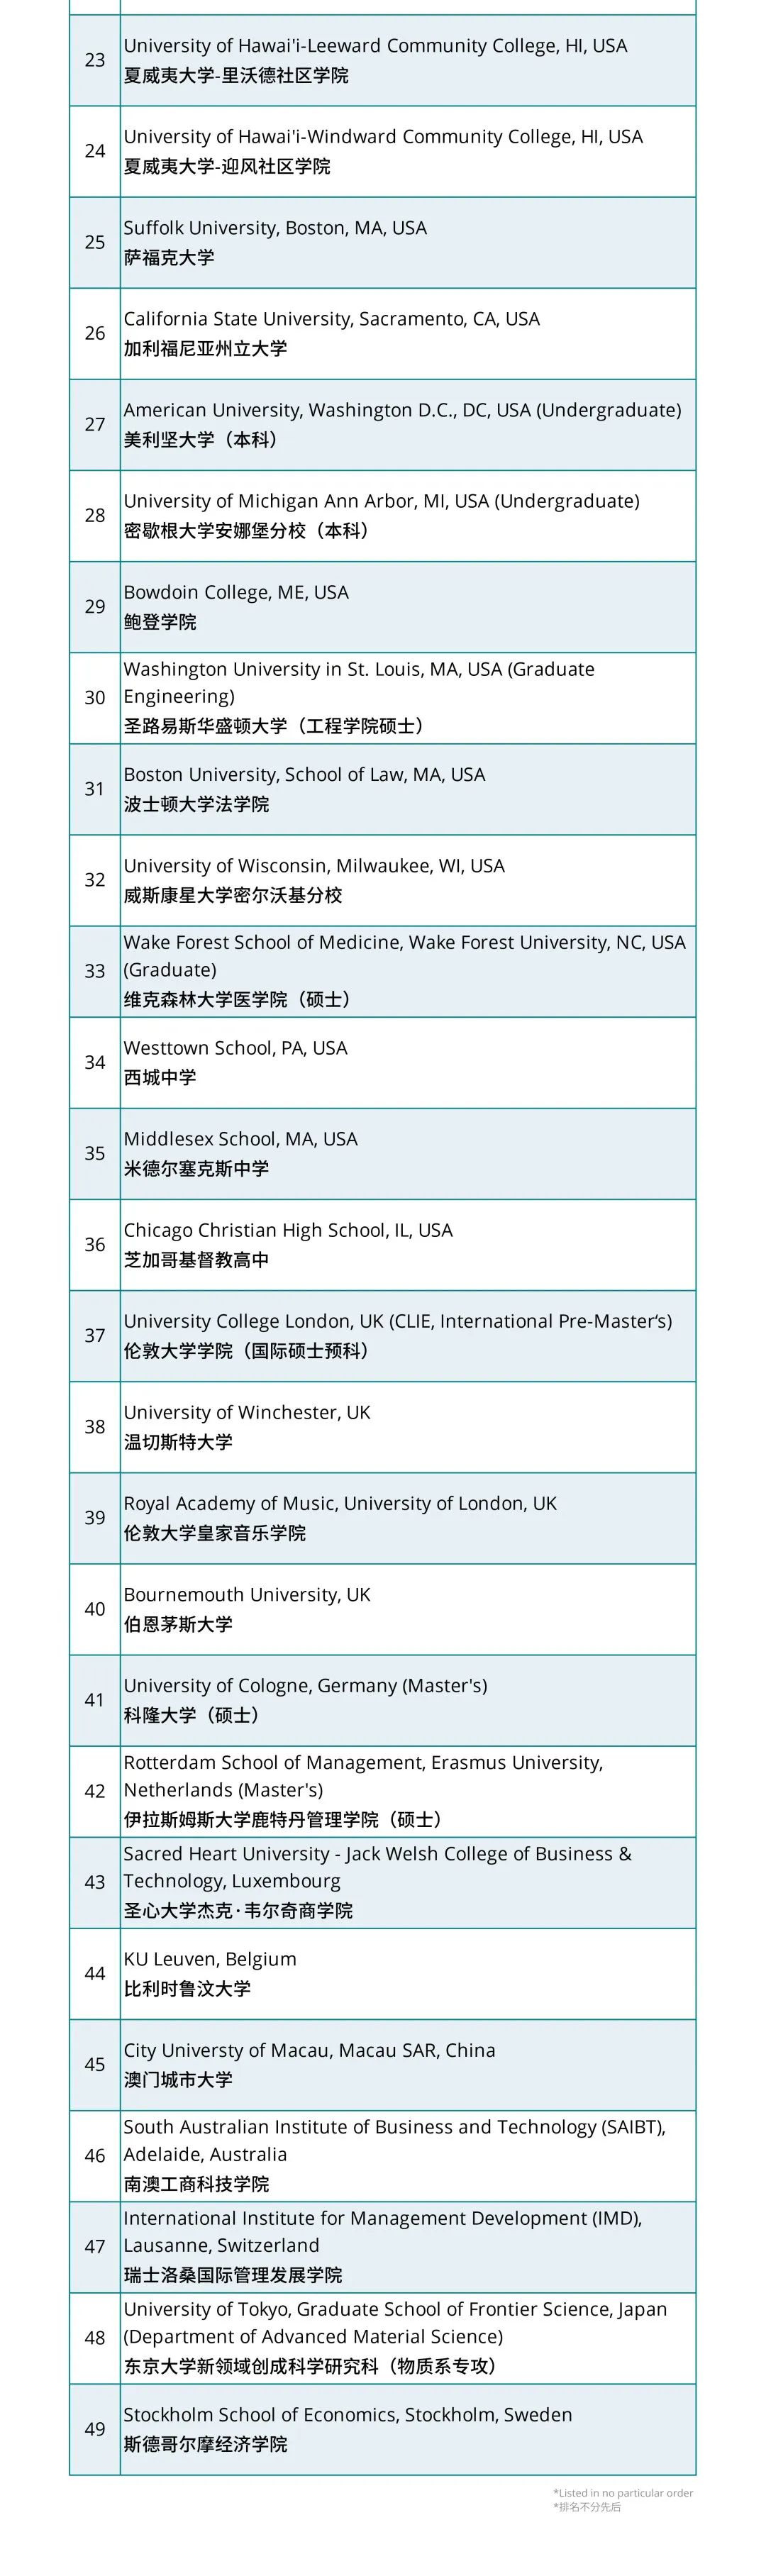 美国认可托福ITP中国版的大学名单一览